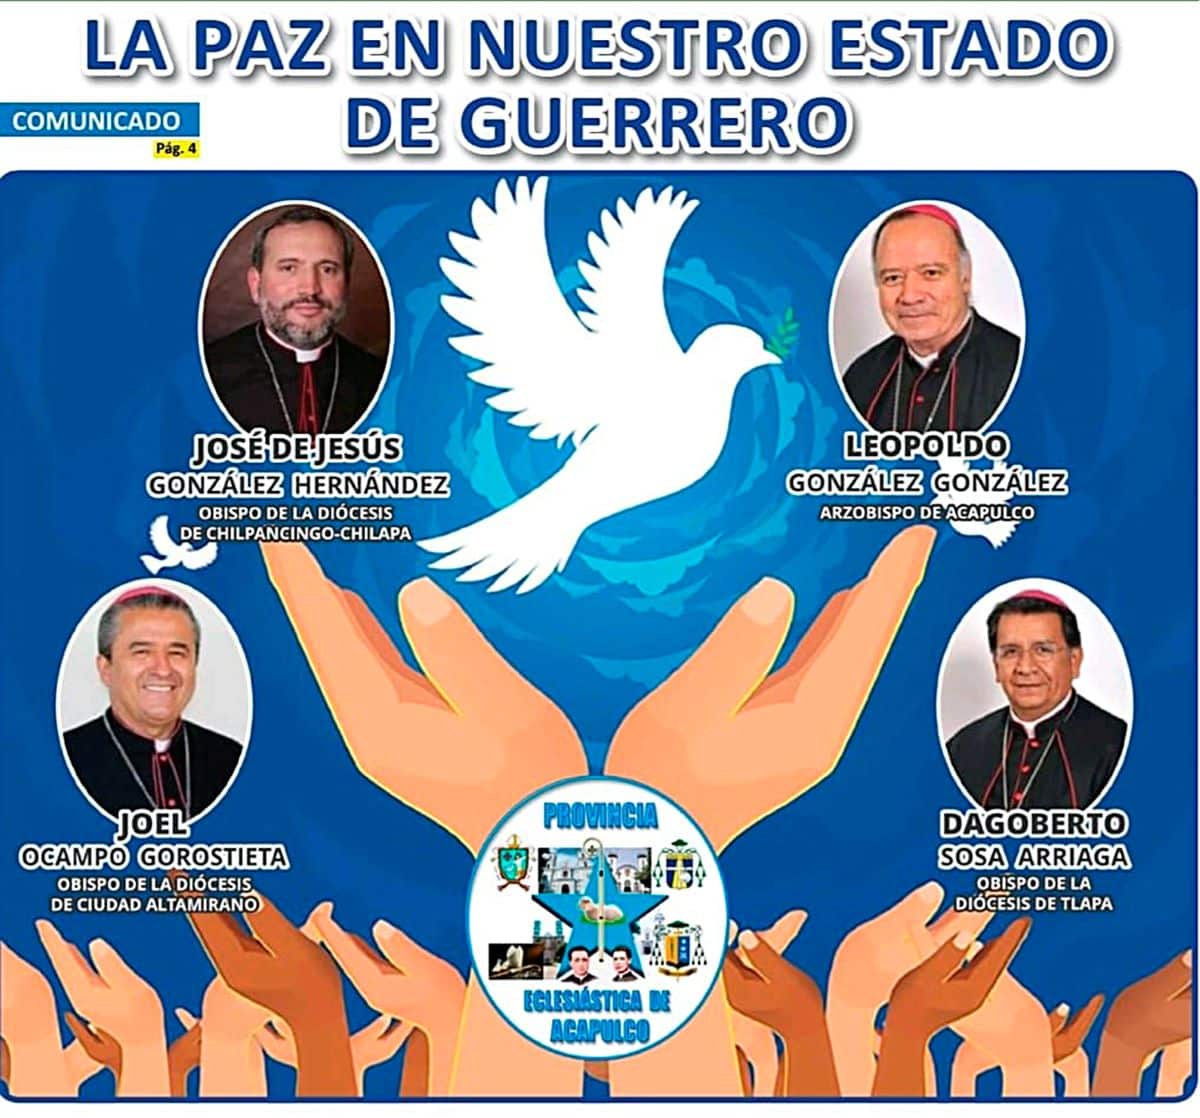 ¿Por qué los obispos católicos de México se reunieron con delincuentes?